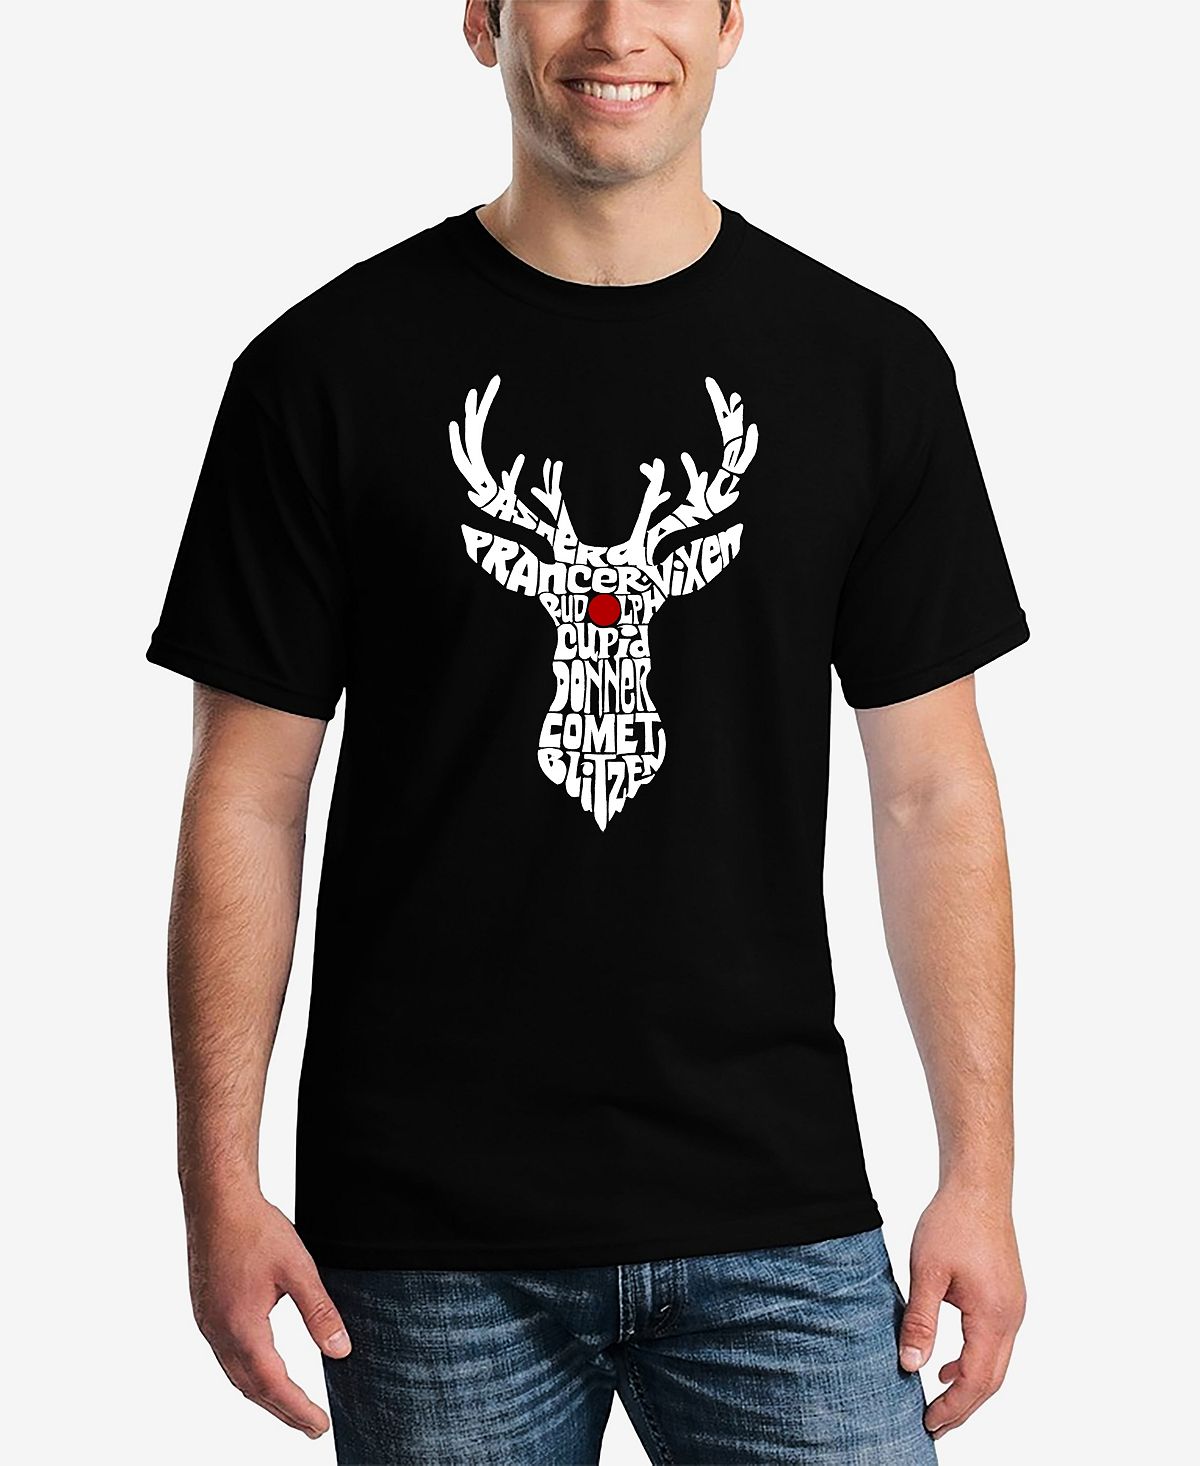 Мужская футболка с коротким рукавом и надписью santa's reindeer word art LA Pop Art, черный